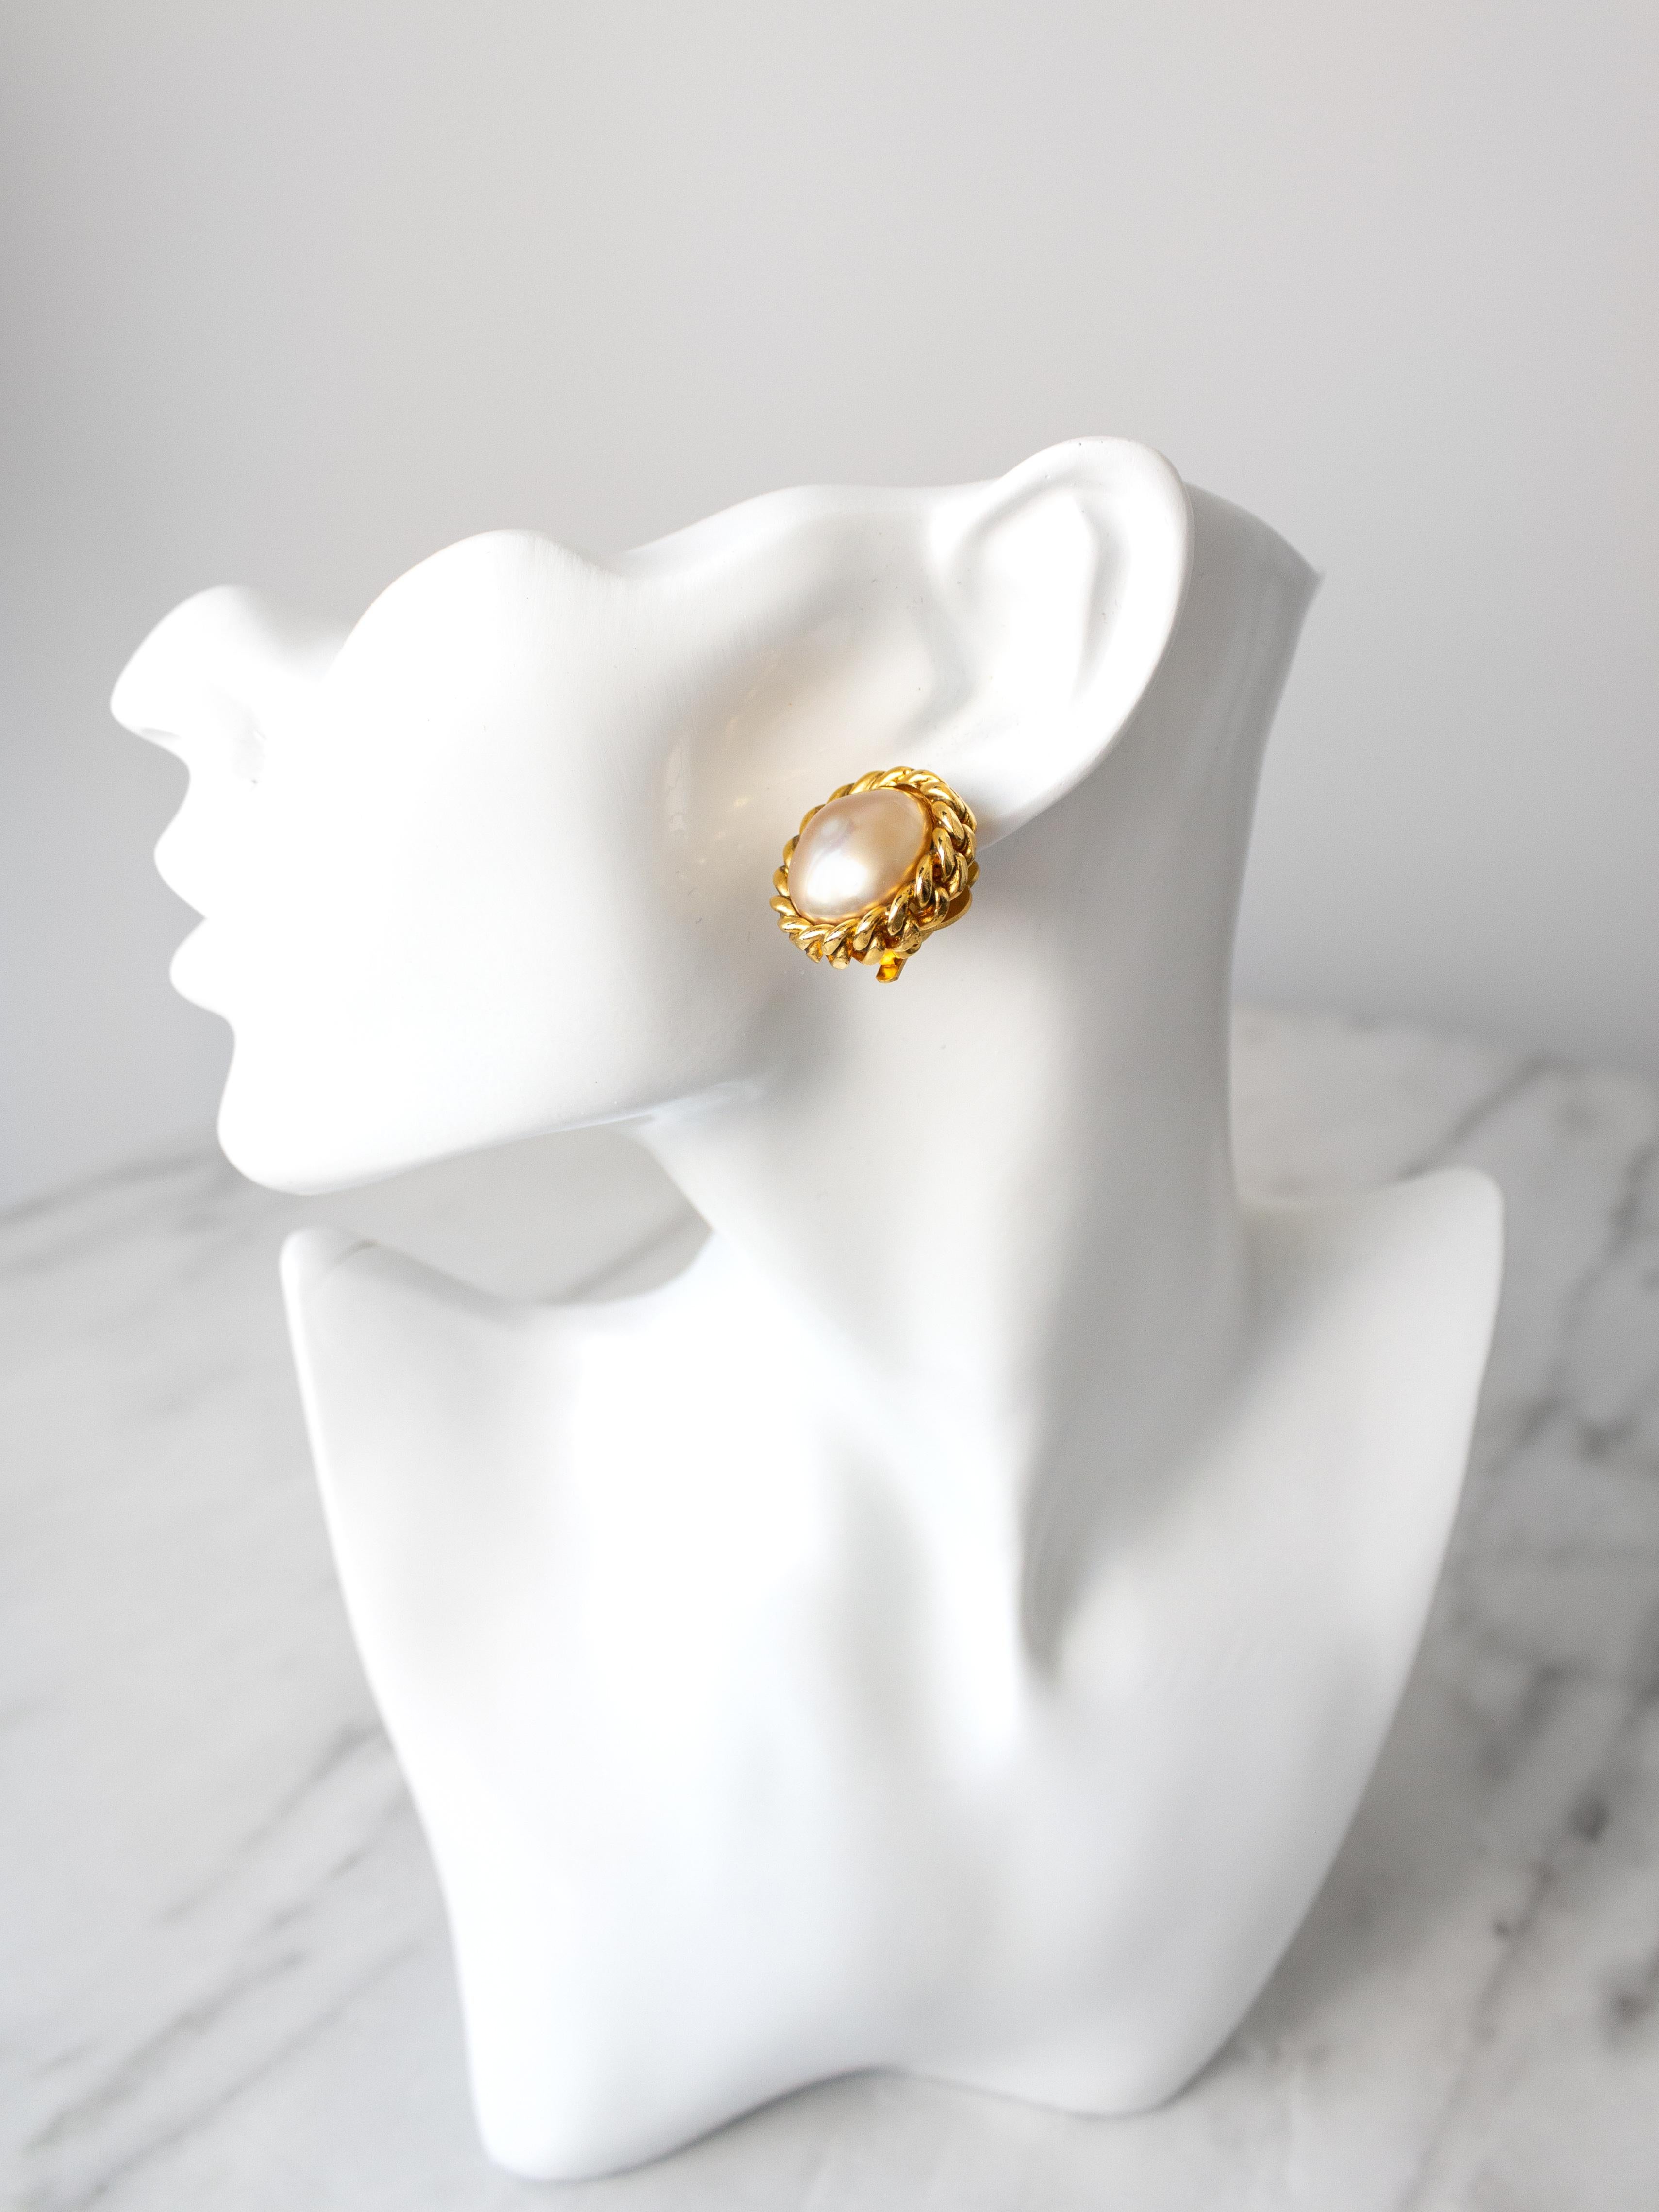 Une paire classique de boucles d'oreilles à clip de Chanel, vers les années 1980. Elles sont ornées en leur centre d'une fausse perle blanc crème lustré, délicatement enchâssée dans un métal plaqué or. Les bijoux fantaisie de Chanel des années 1980